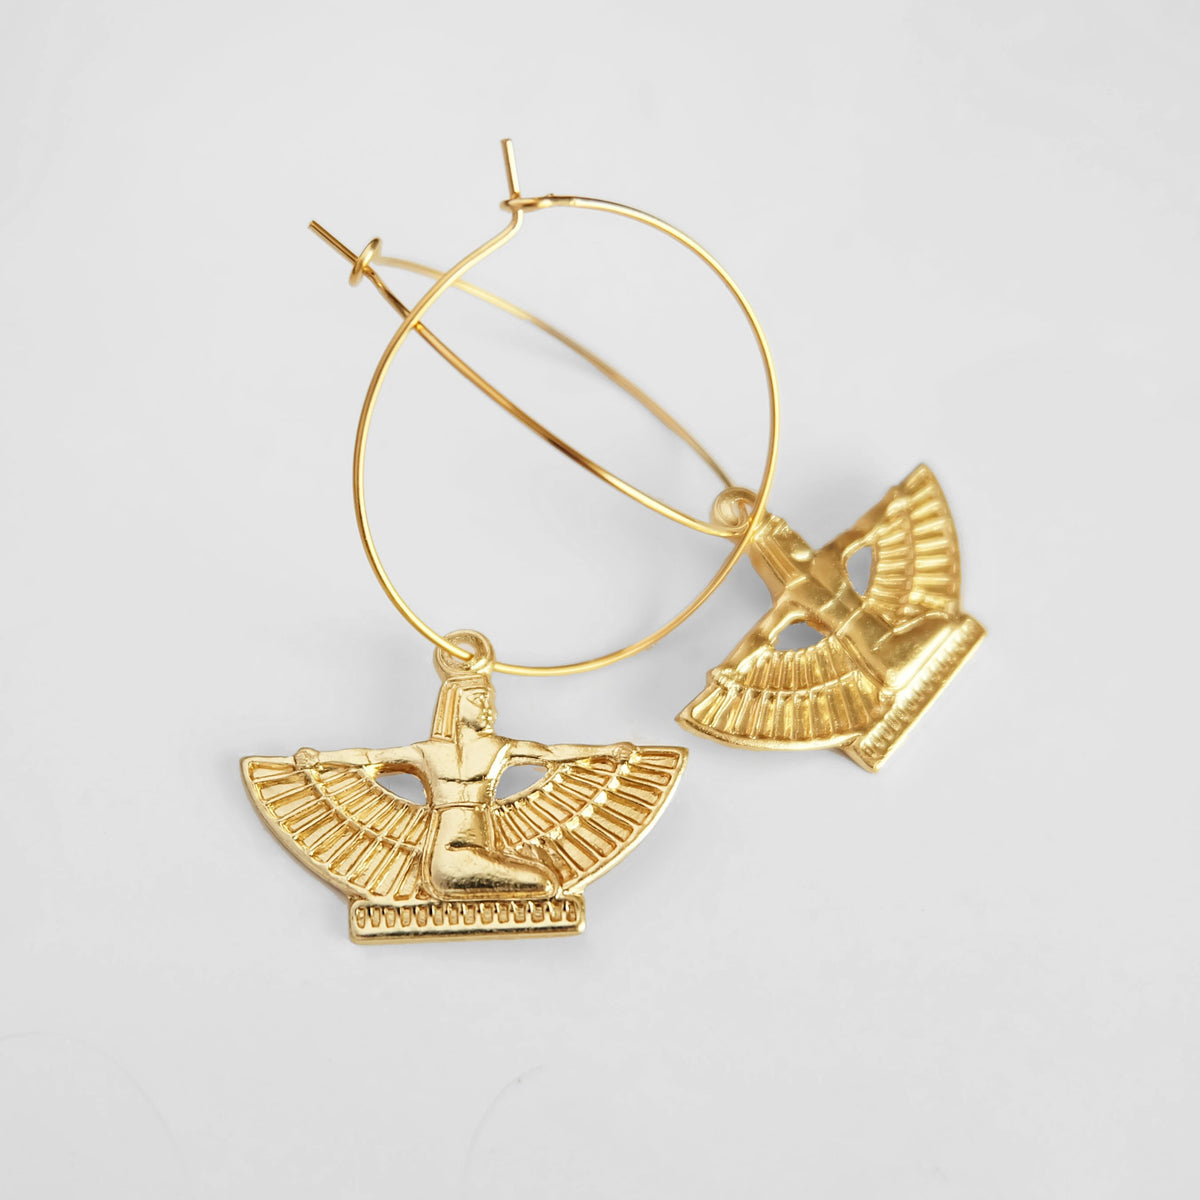 Nile Goddess Earrings, gold Egyptian earrings